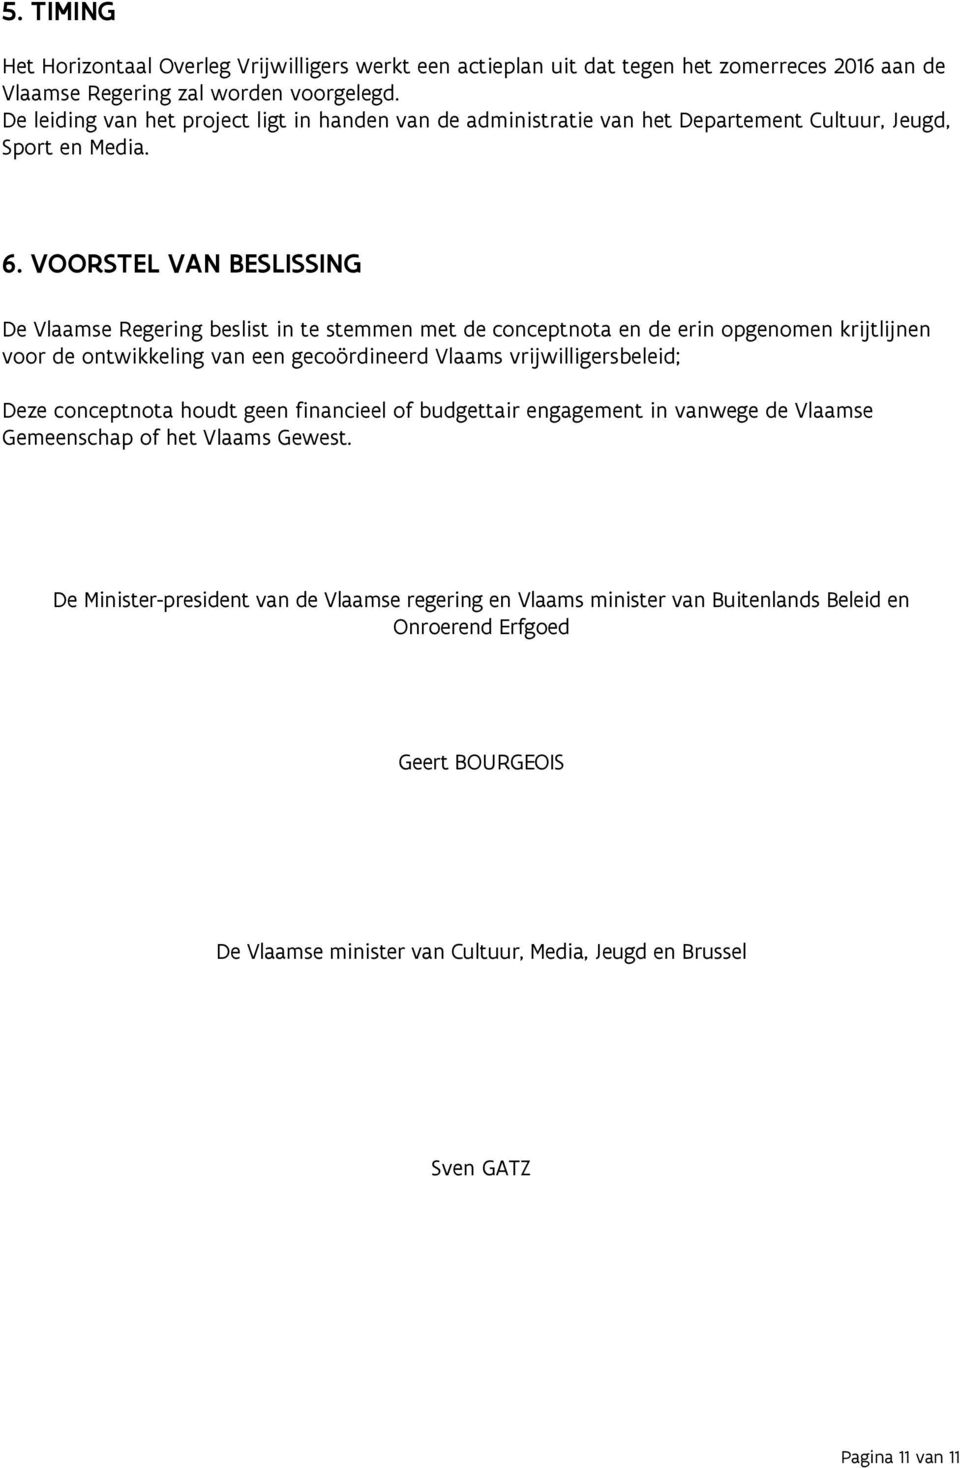 VOORSTEL VAN BESLISSING De Vlaamse Regering beslist in te stemmen met de conceptnota en de erin opgenomen krijtlijnen voor de ontwikkeling van een gecoördineerd Vlaams vrijwilligersbeleid; Deze